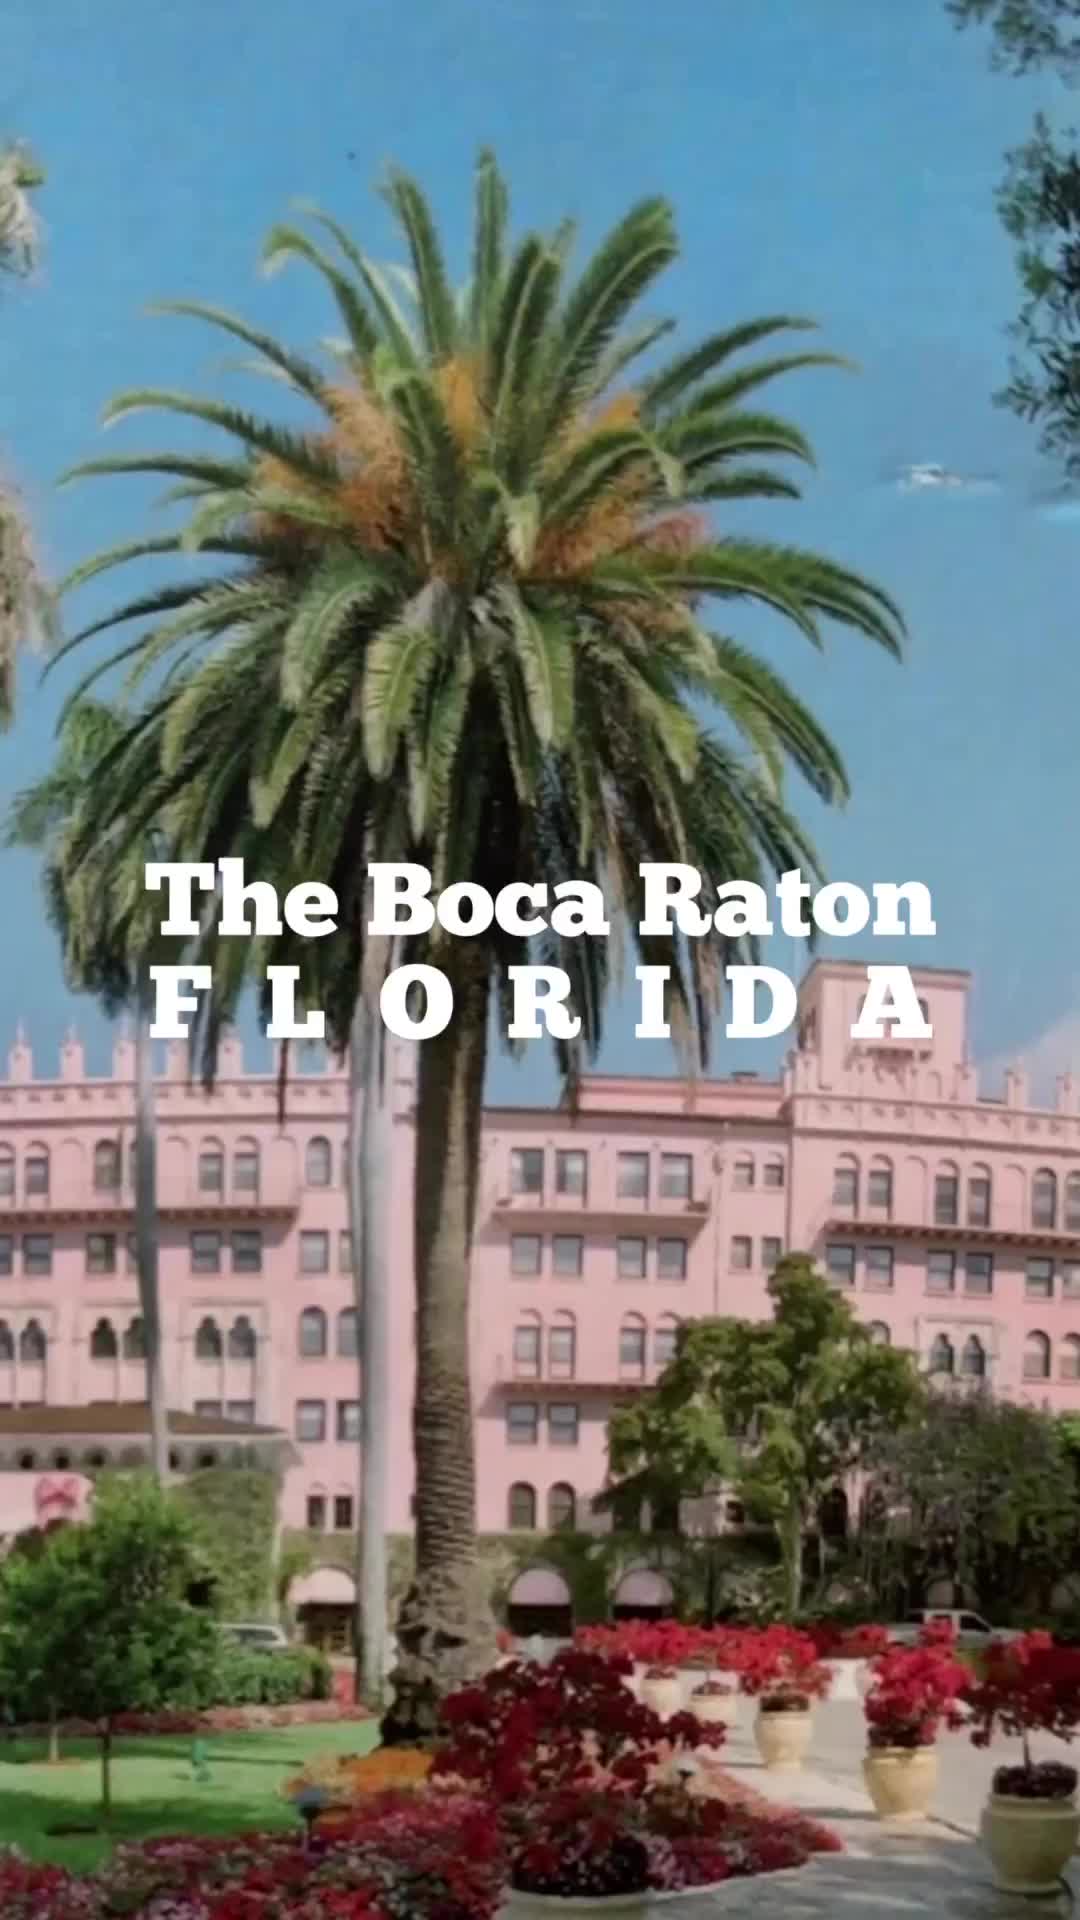 Discover The Boca Raton’s New Golden Era